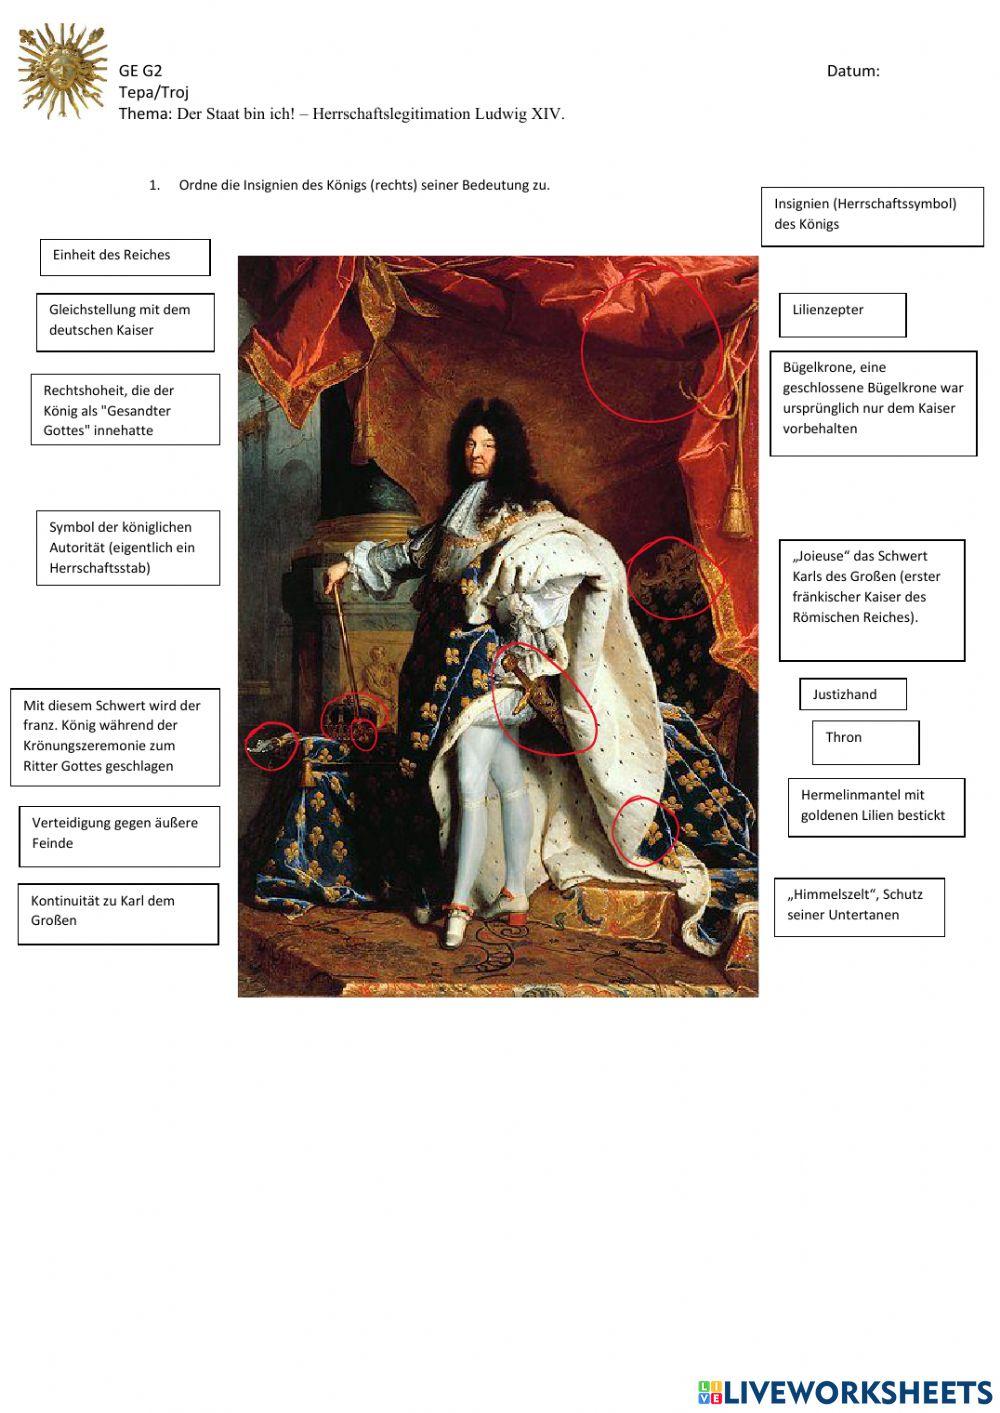 Der Staat bin ich - Herrschaftssymbole Ludwig XIV.